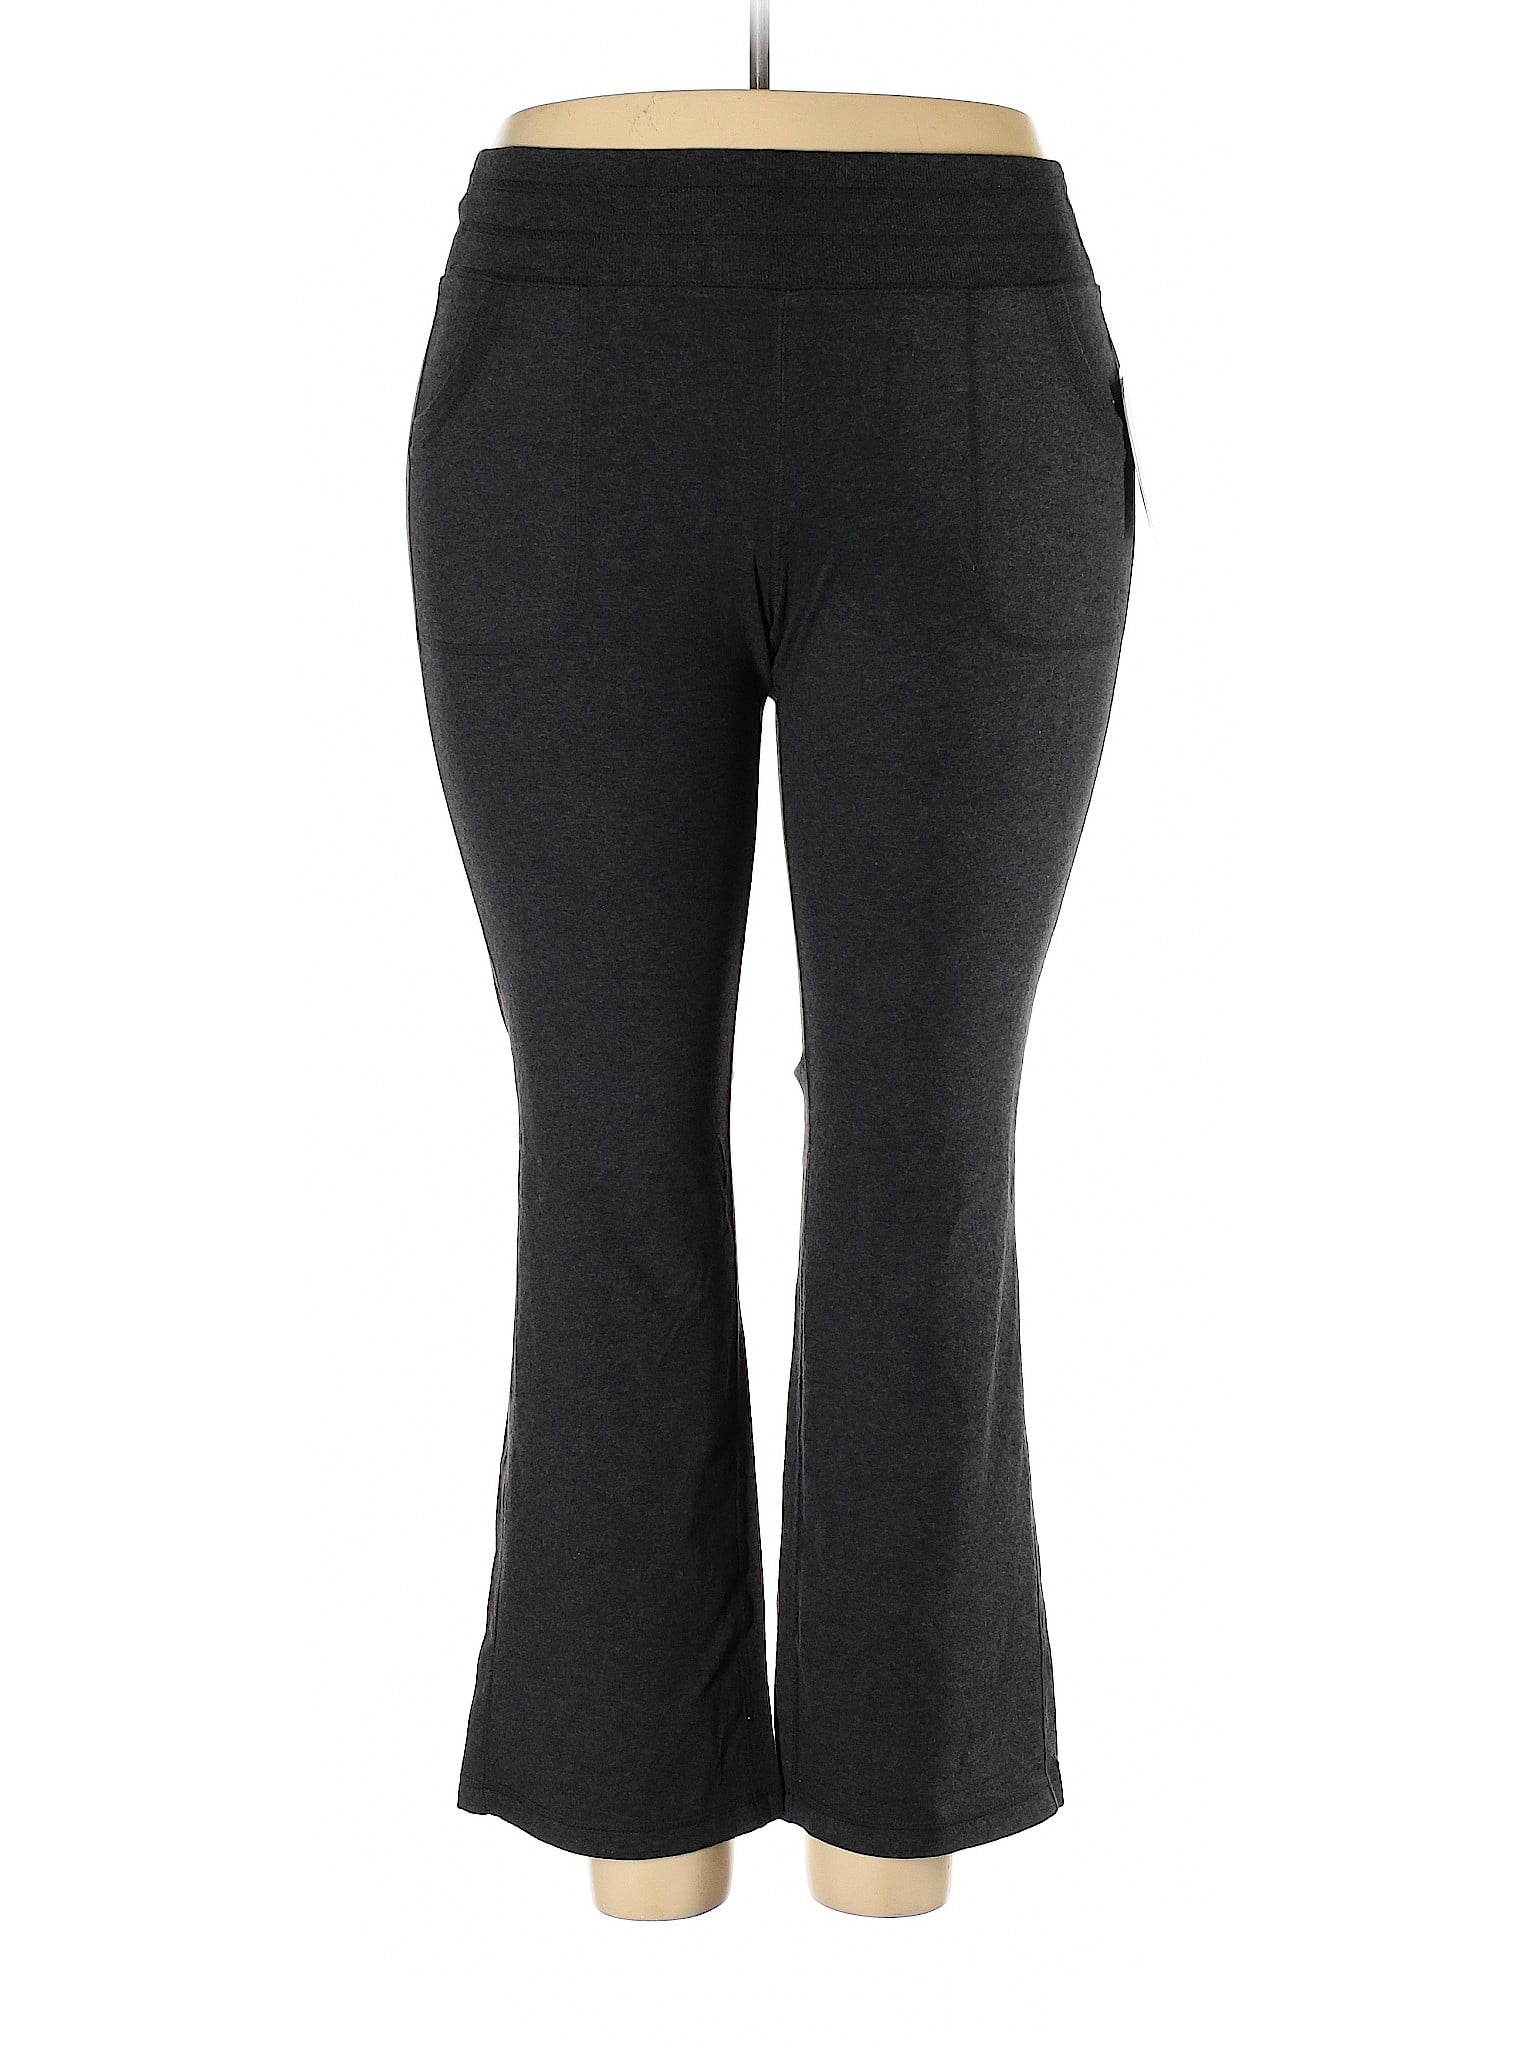 Tek Gear - Pre-Owned Tek Gear Women's Size XL Active Pants - Walmart ...